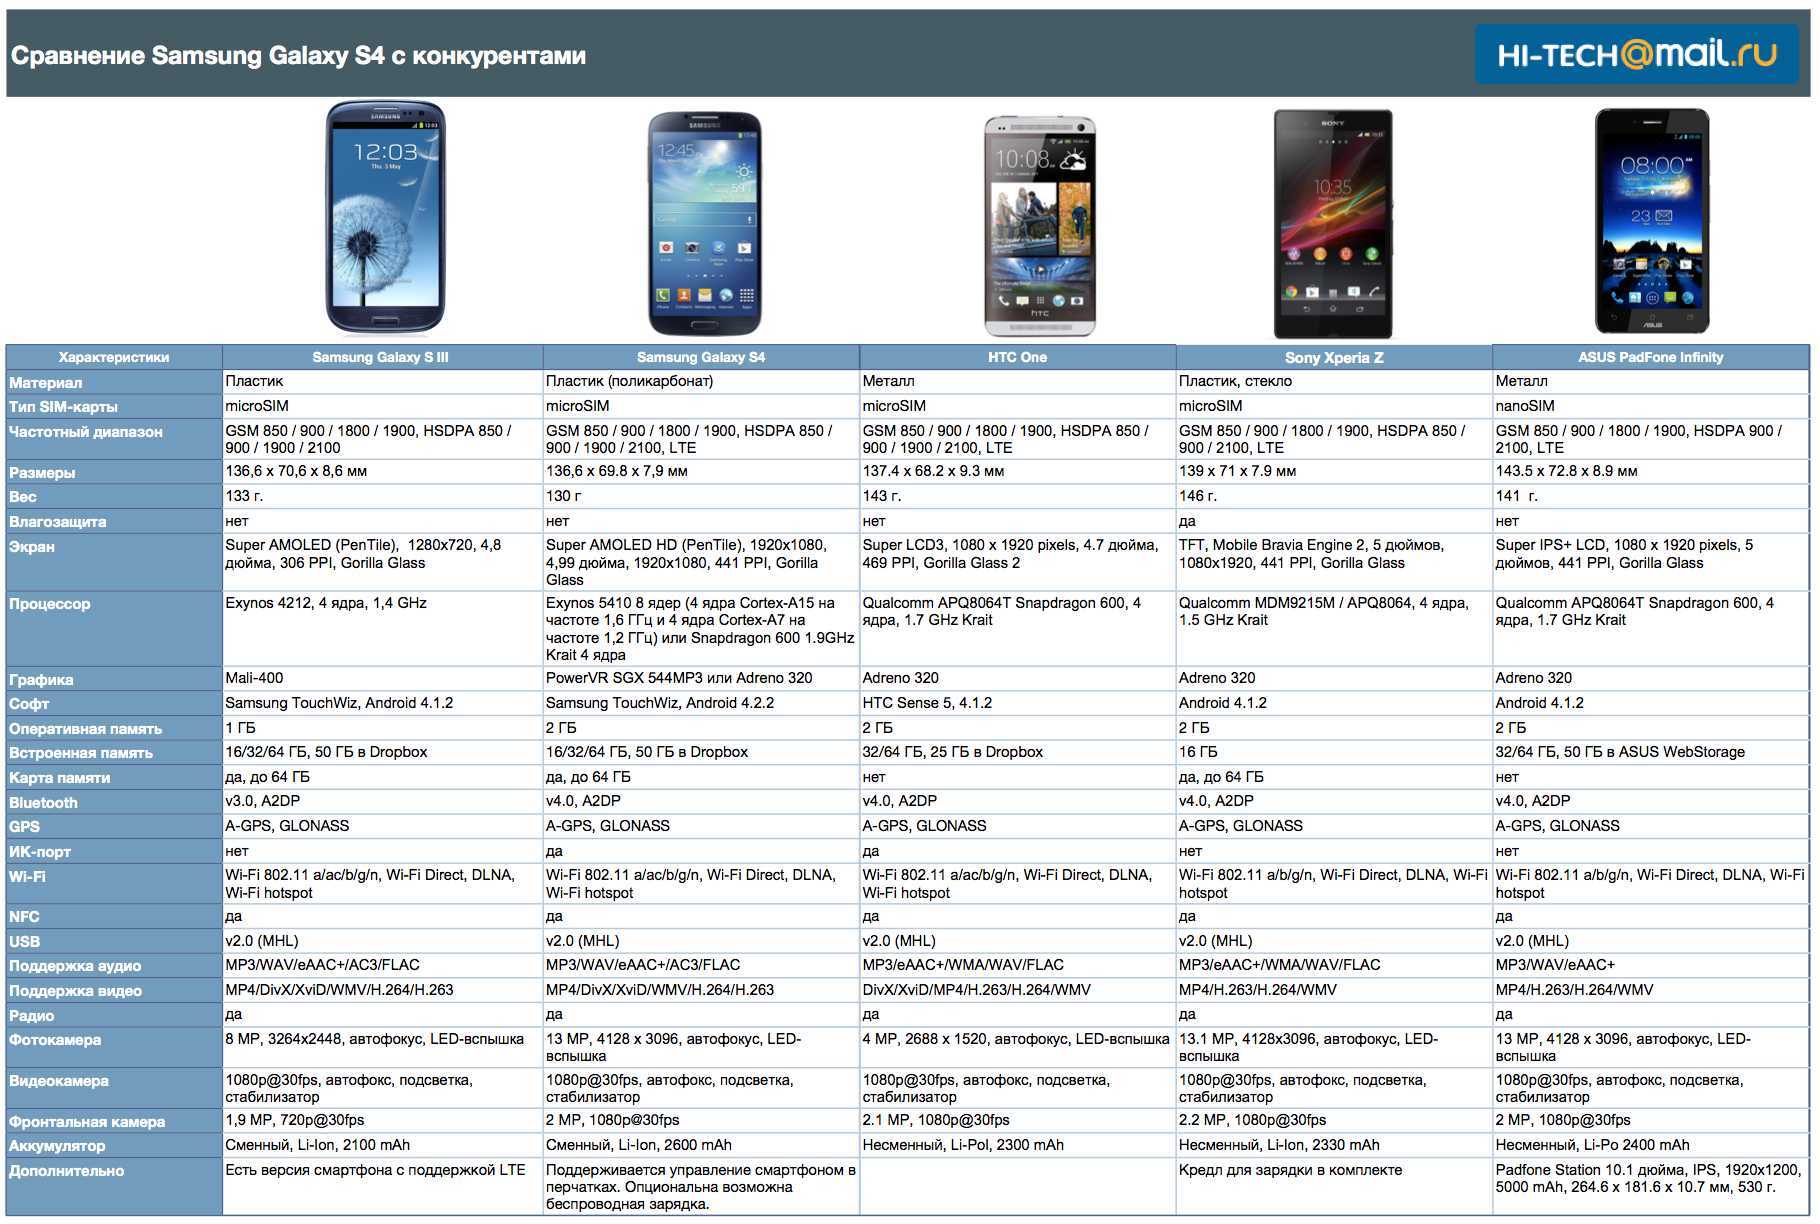 10 лучших фирм смартфонов